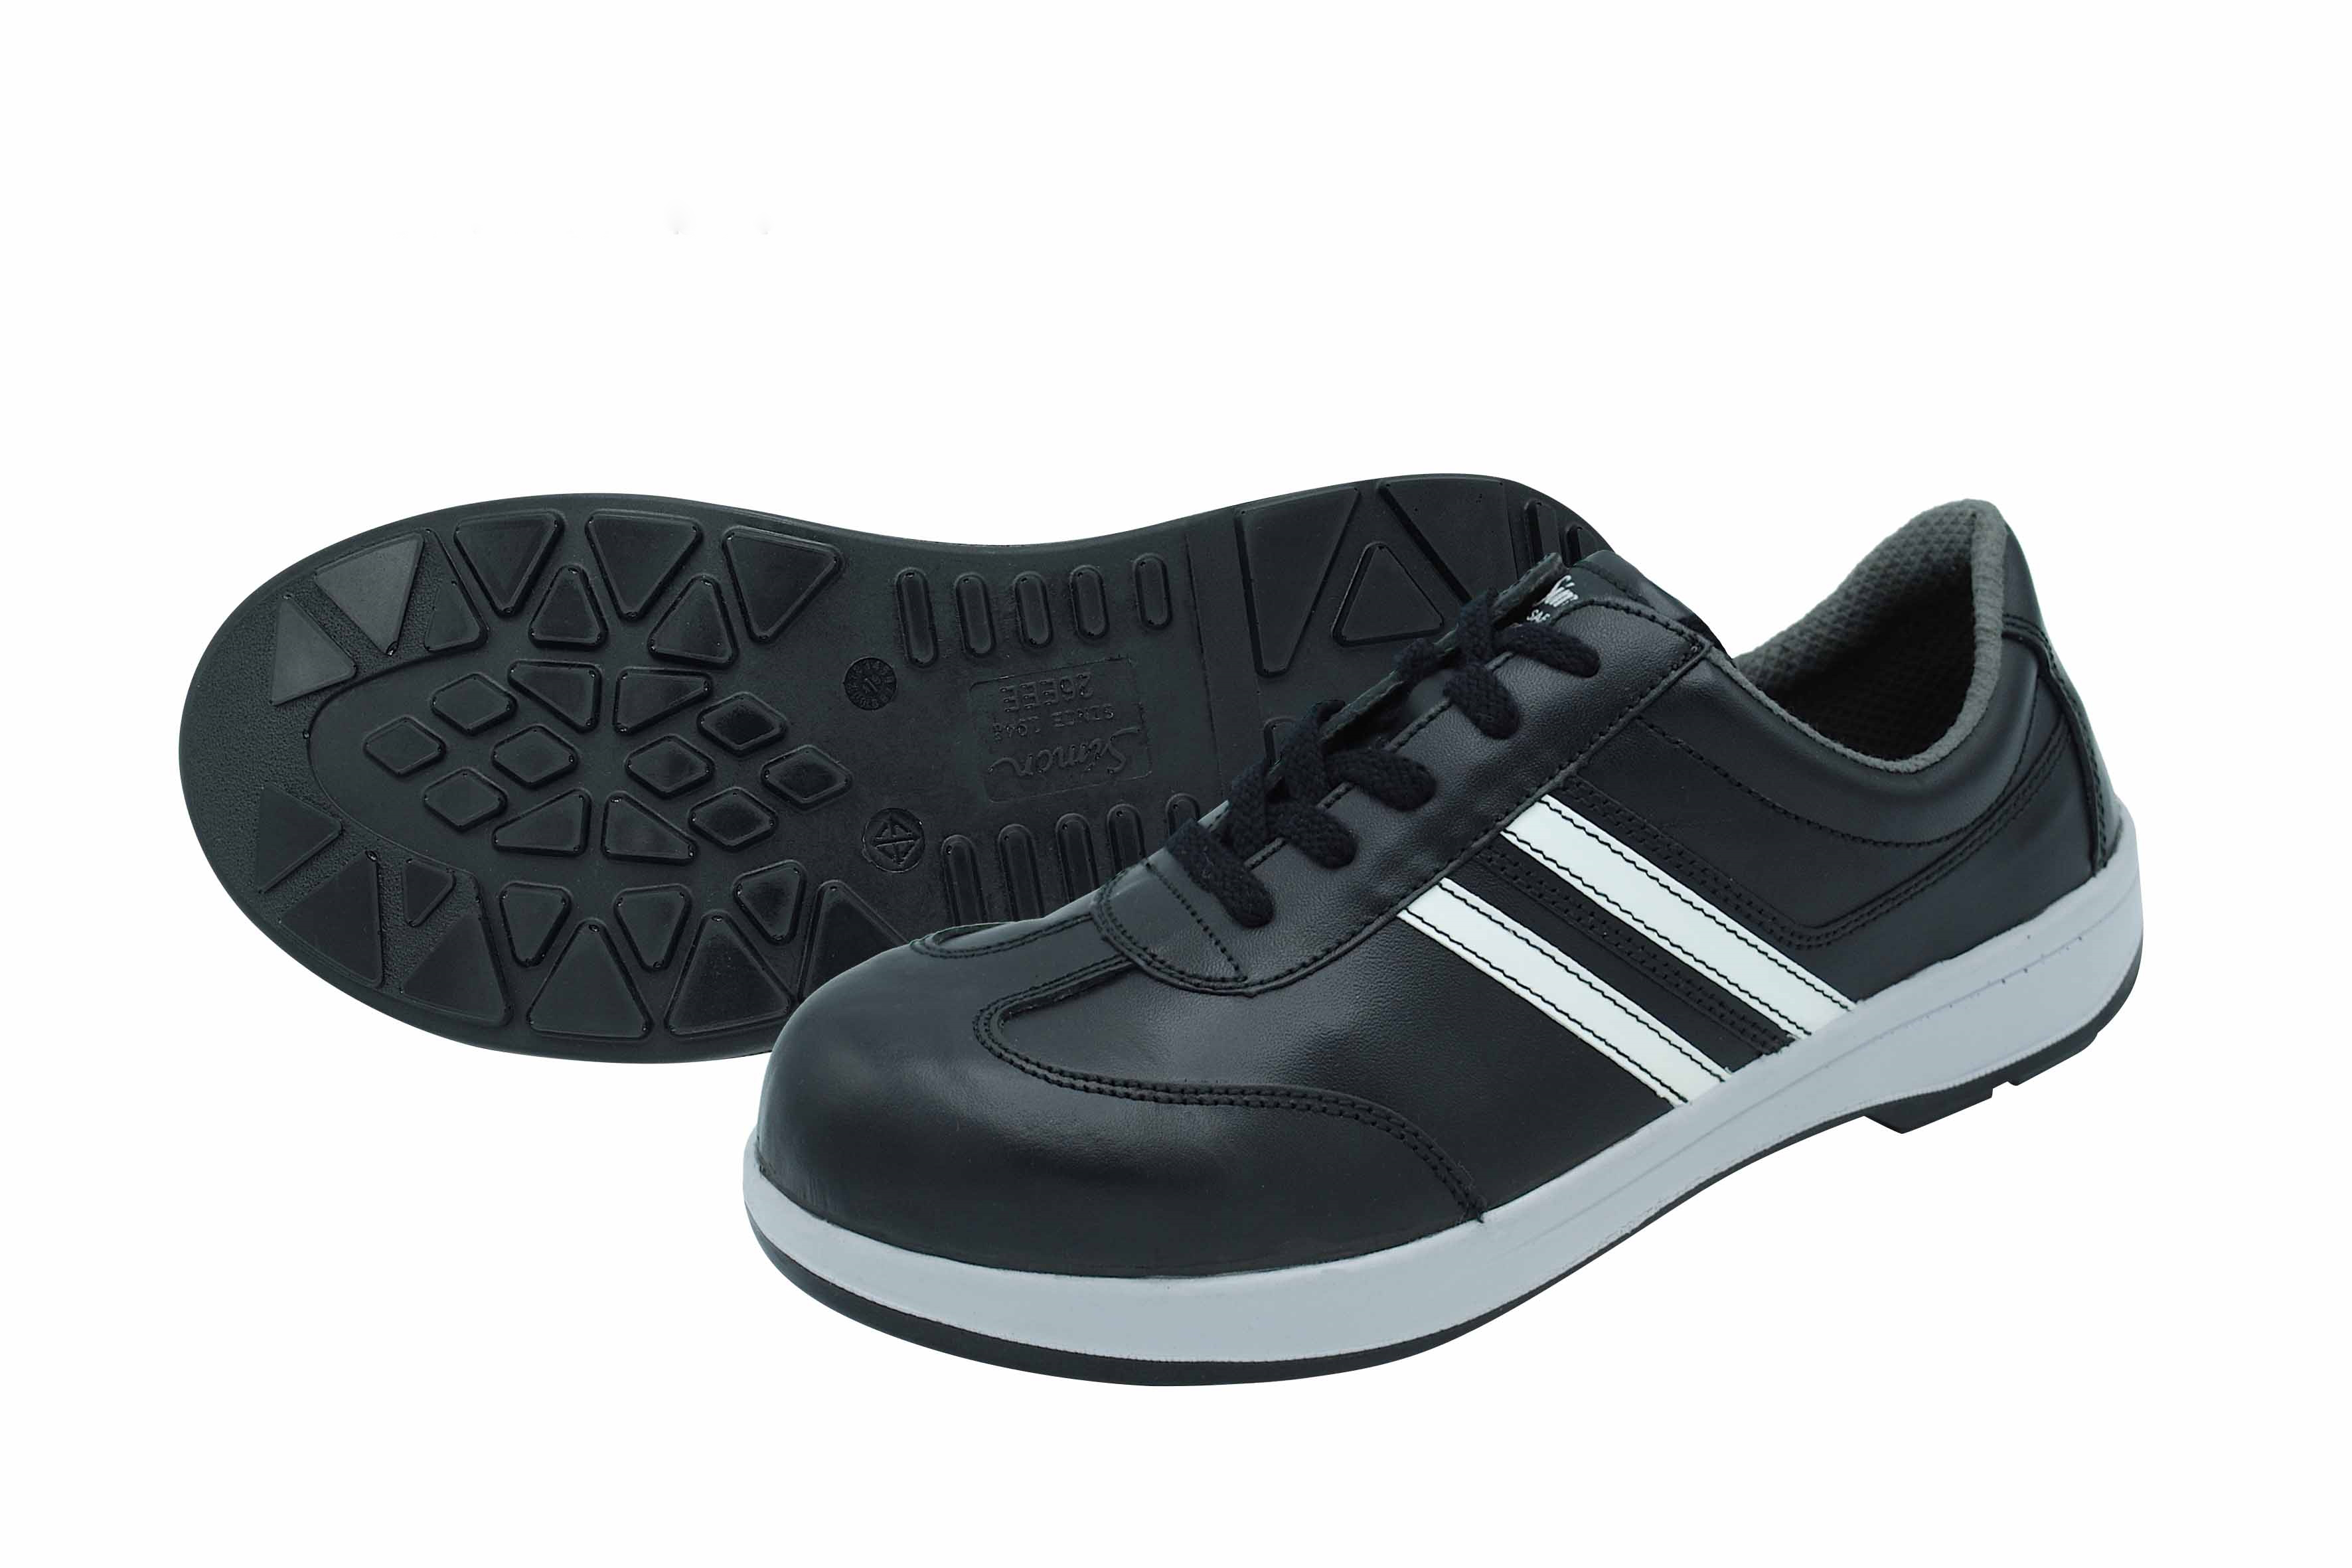 Safety Shoes TSBZ11 Black (TSBZ11-BK-26.0)